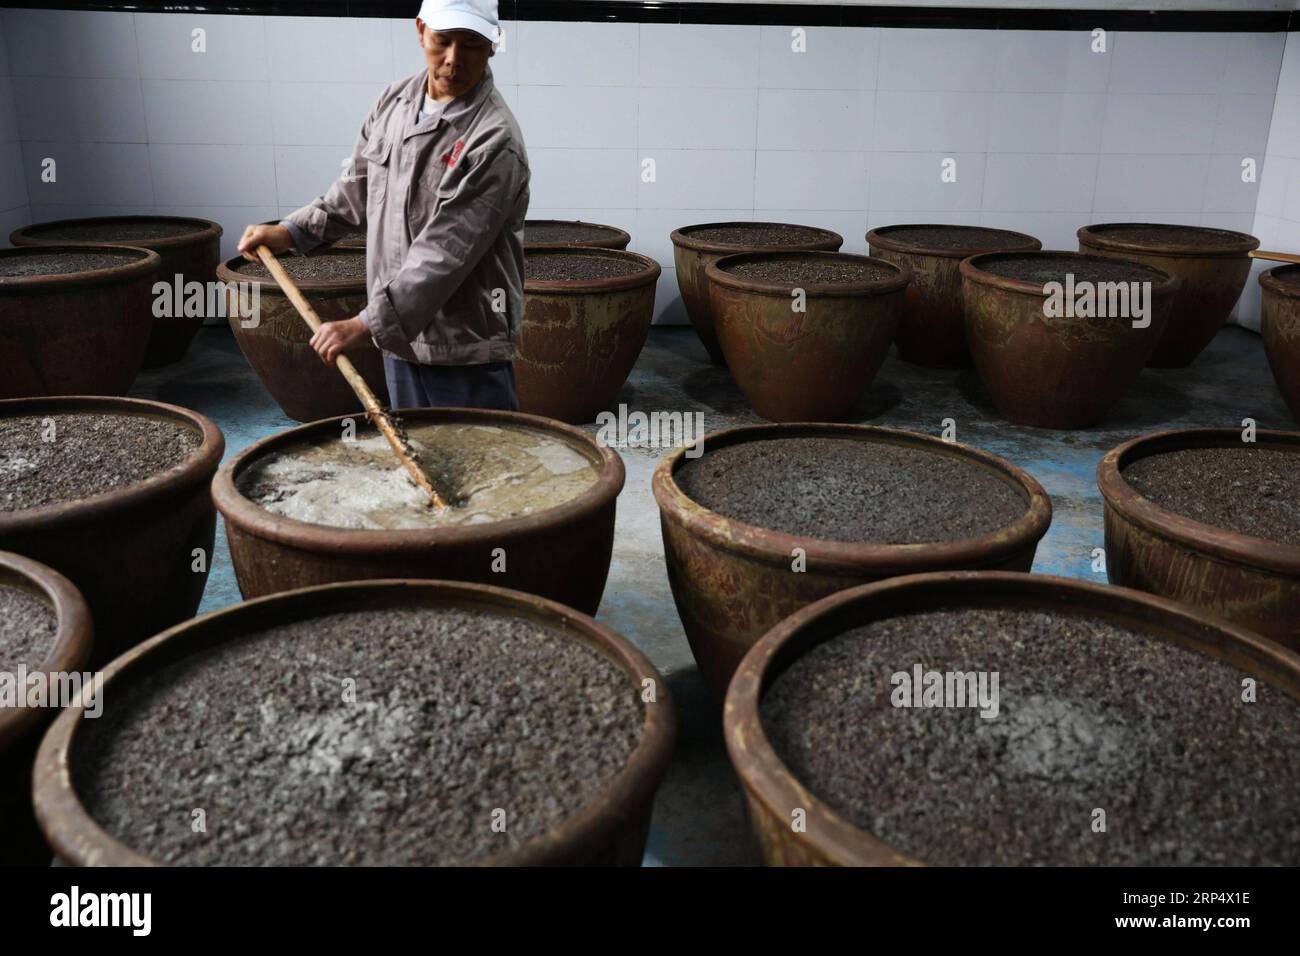 (181119) -- ZUNYI, 19. November 2018 -- Ein Arbeiter rührt Rohstoffe zur Essigherstellung in einer Essigfabrik in Chishui, südwestchinesische Provinz Guizhou, 18. November 2018. Chishui hat eine traditionelle Methode zur Essigherstellung mit über 30 Prozessschritten beibehalten.) (Ry) CHINA-GUIZHOU-ESSIGHERSTELLUNG (CN) WangxChangyu PUBLICATIONxNOTxINxCHN Stockfoto